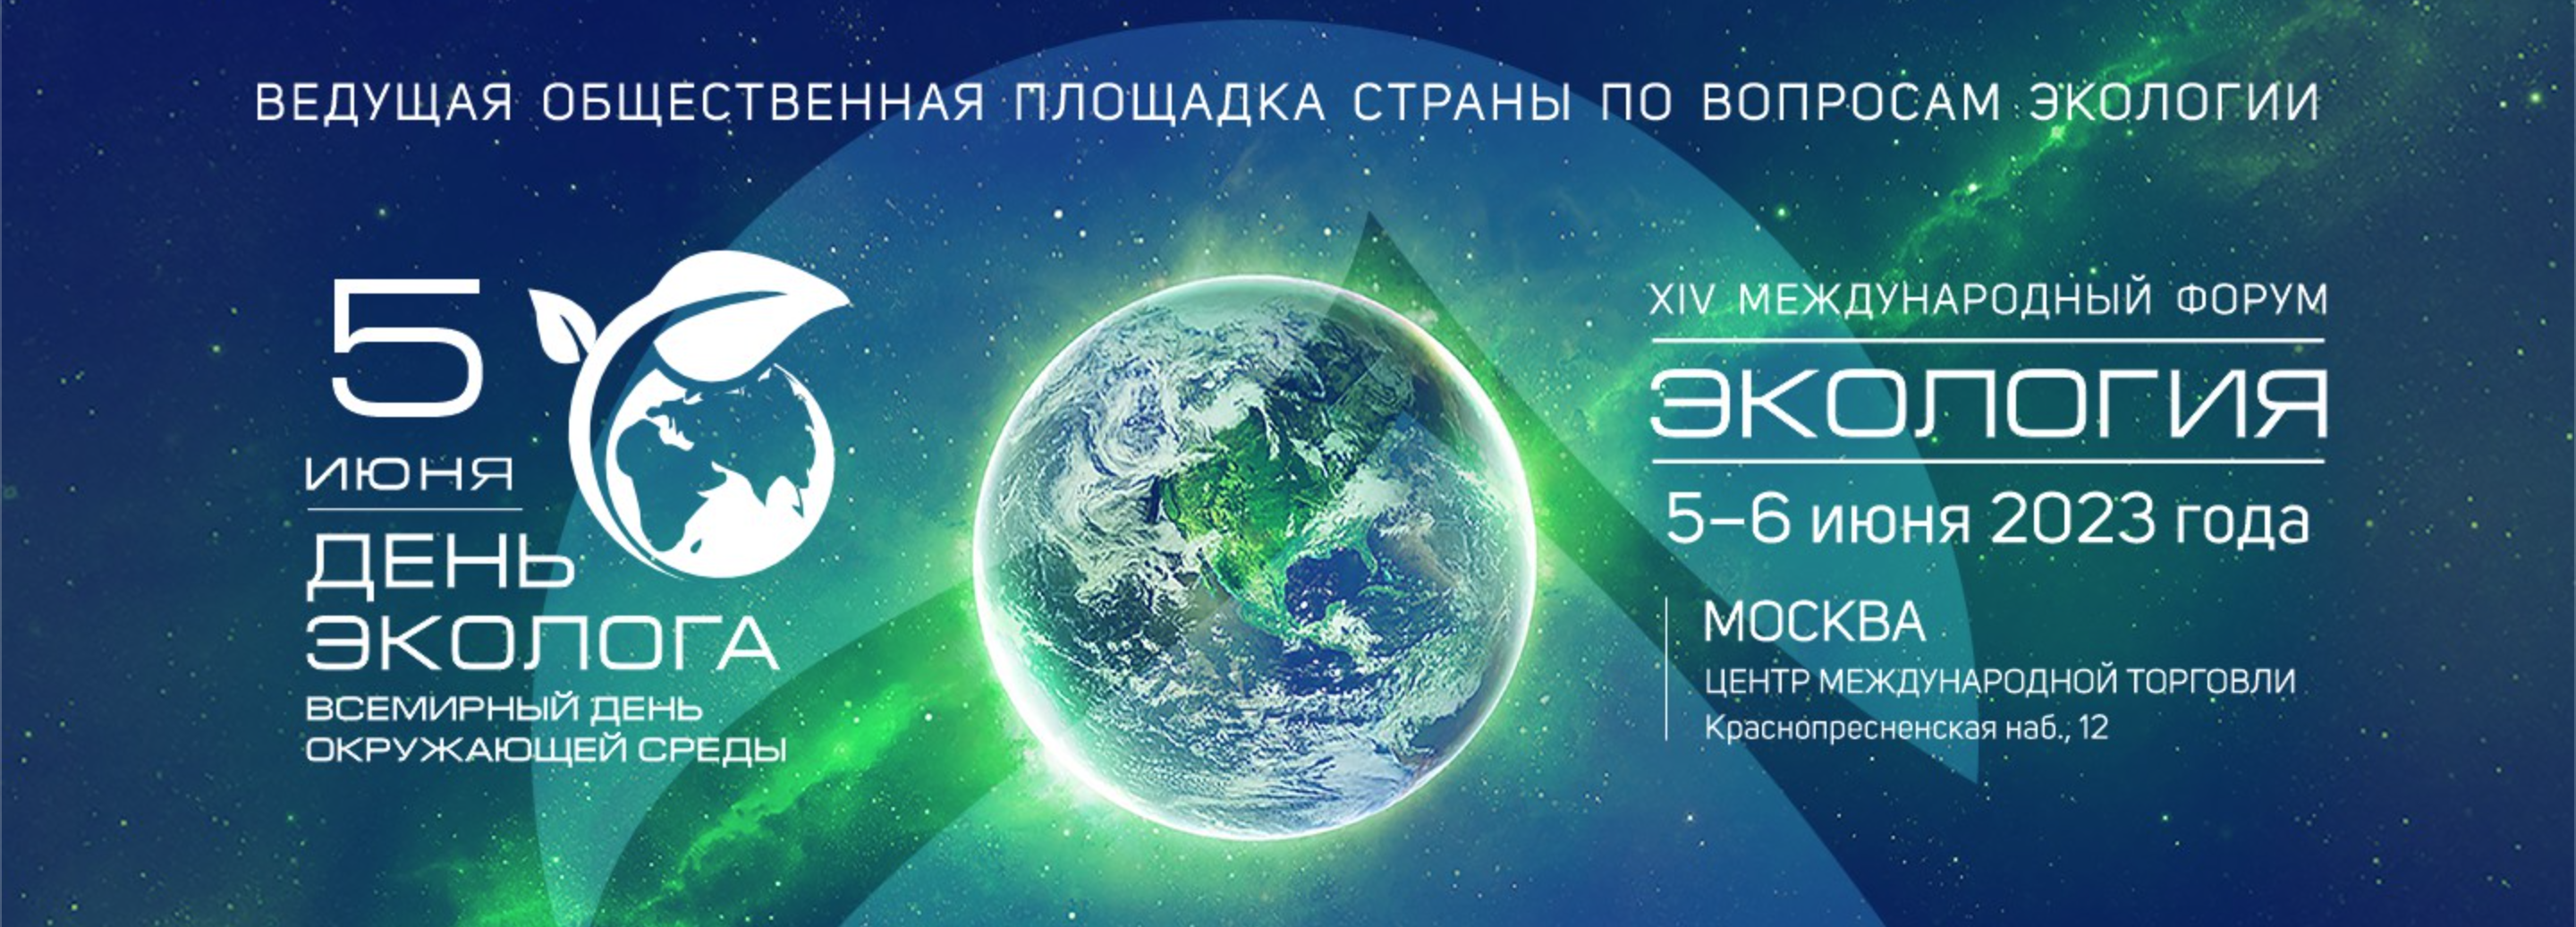 Экологические программы в России 2022. Всемирный день охраны окружающей среды 2023. День экологии в России в 2023. Всемирный день экологии 5 июня 2023. Отчет экология 2023